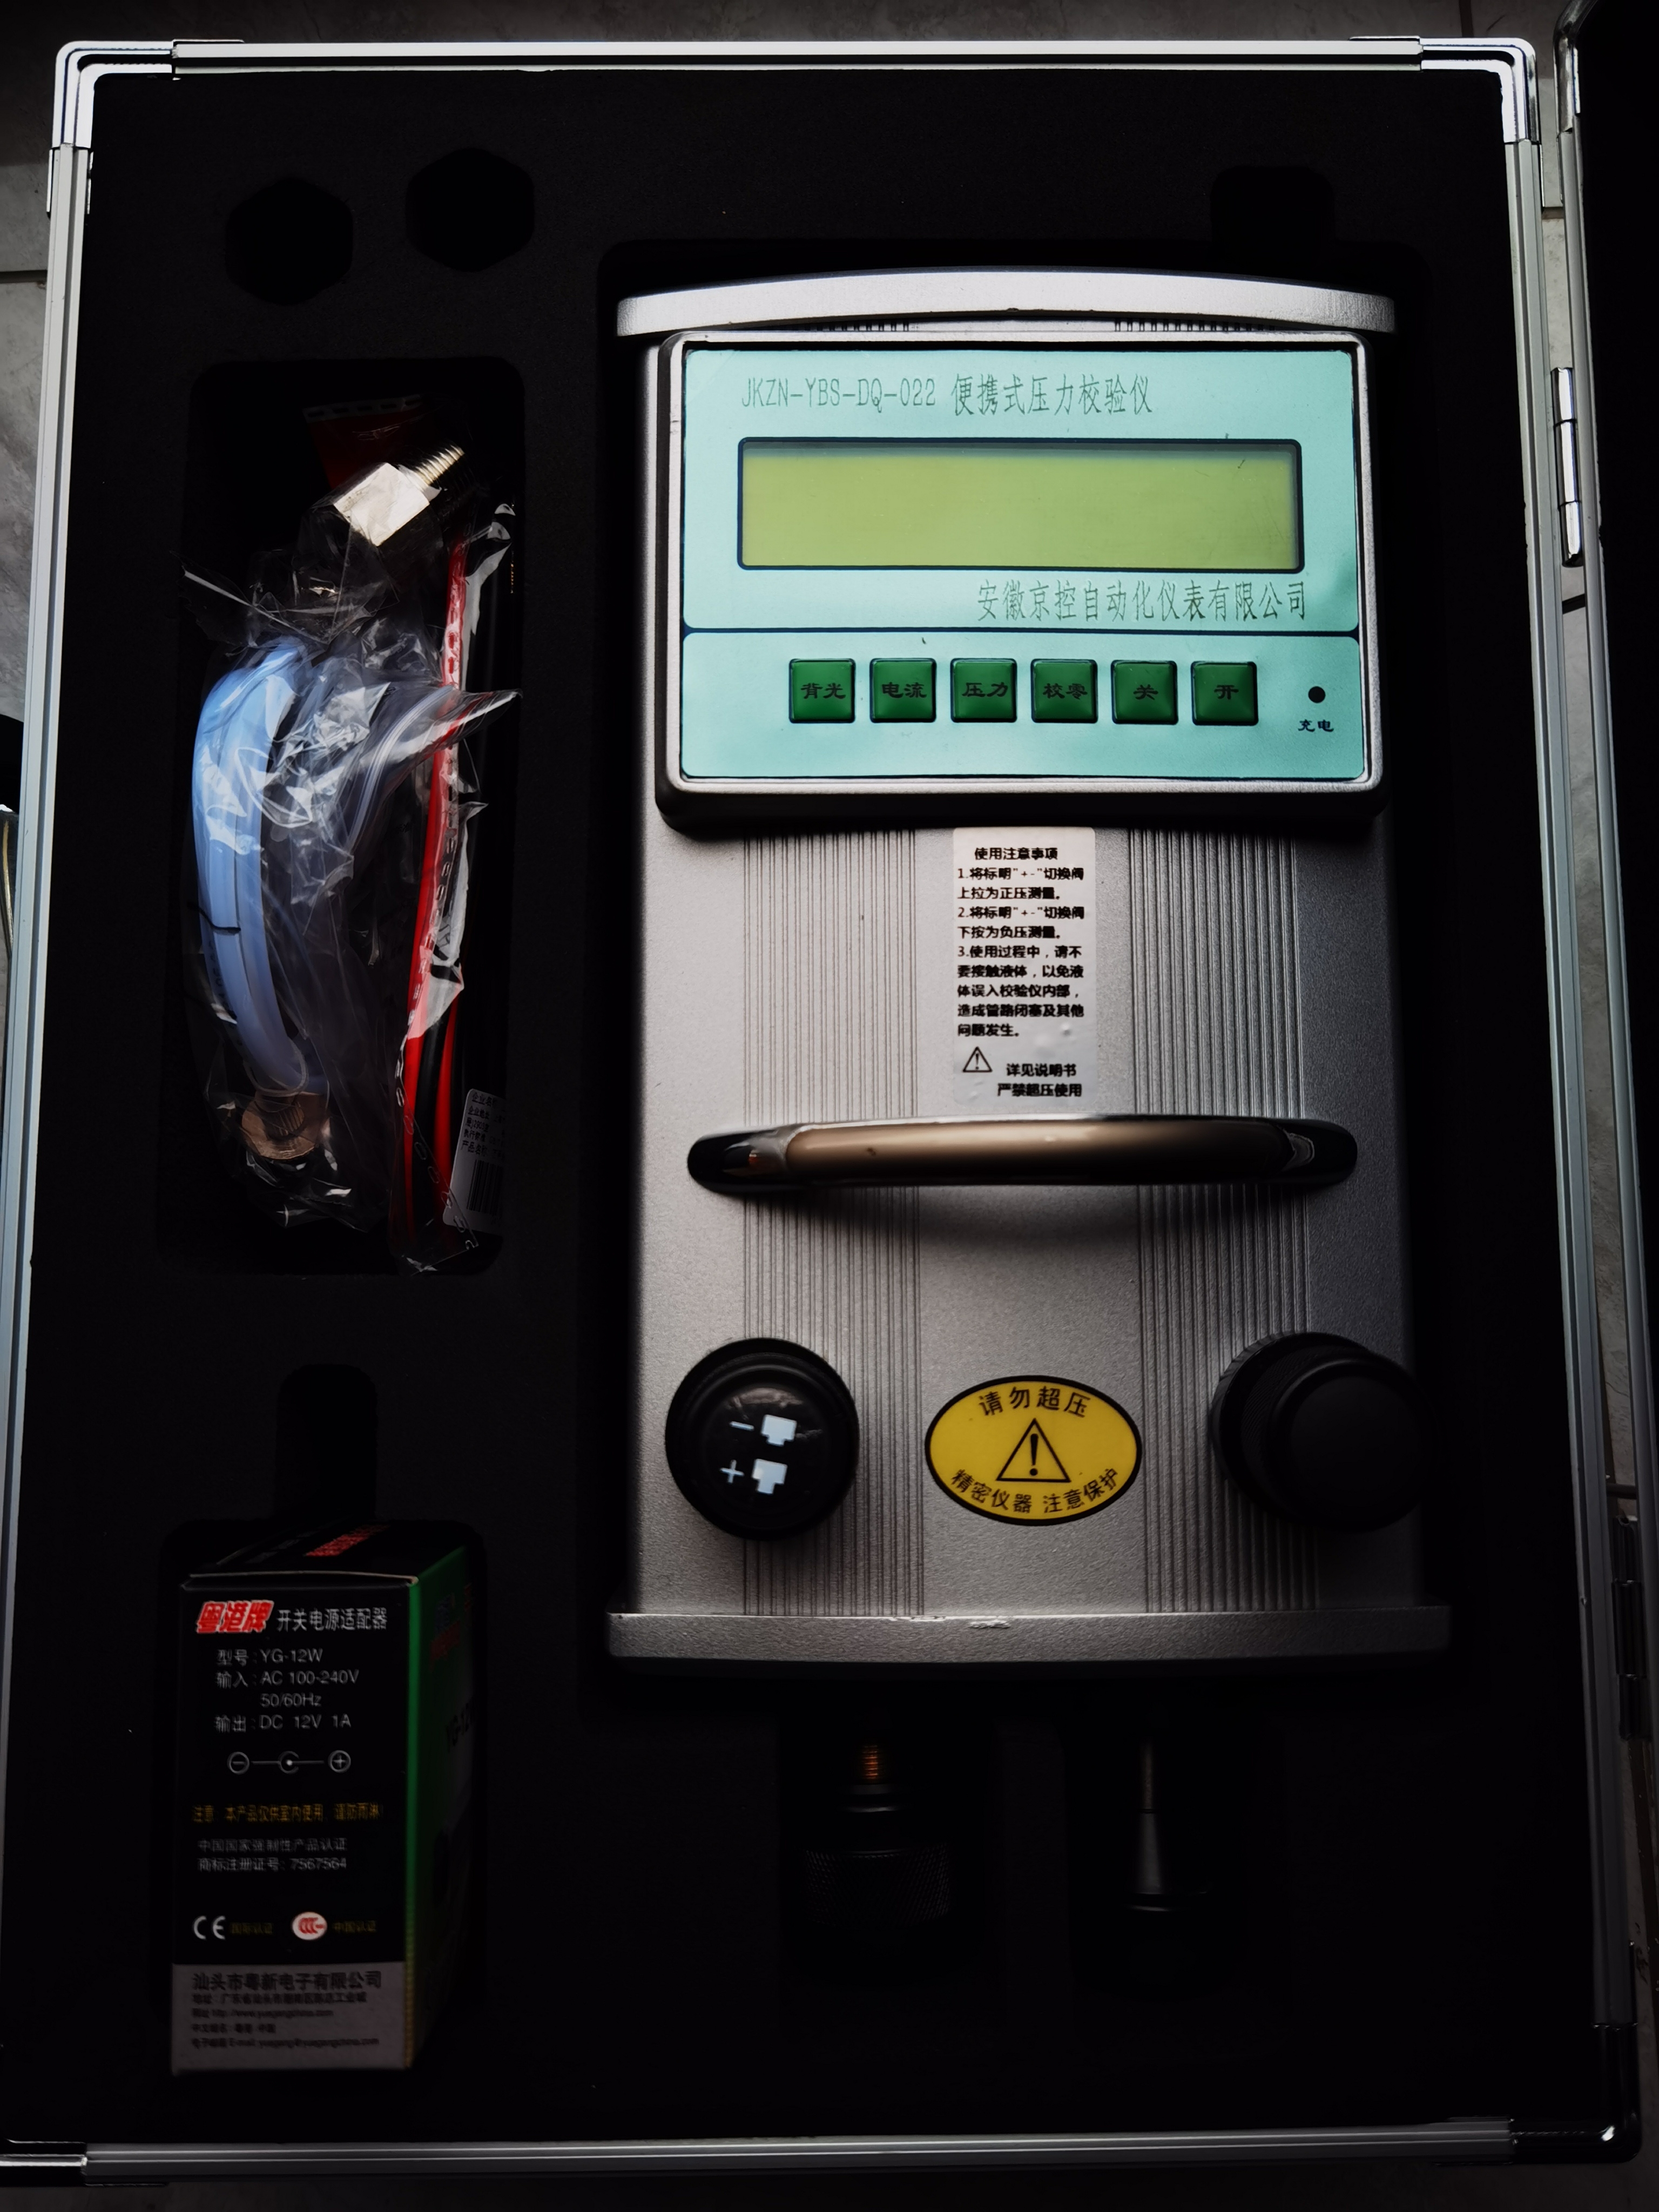 JKZN-YBS-DQ-022便携式数字压力校验仪